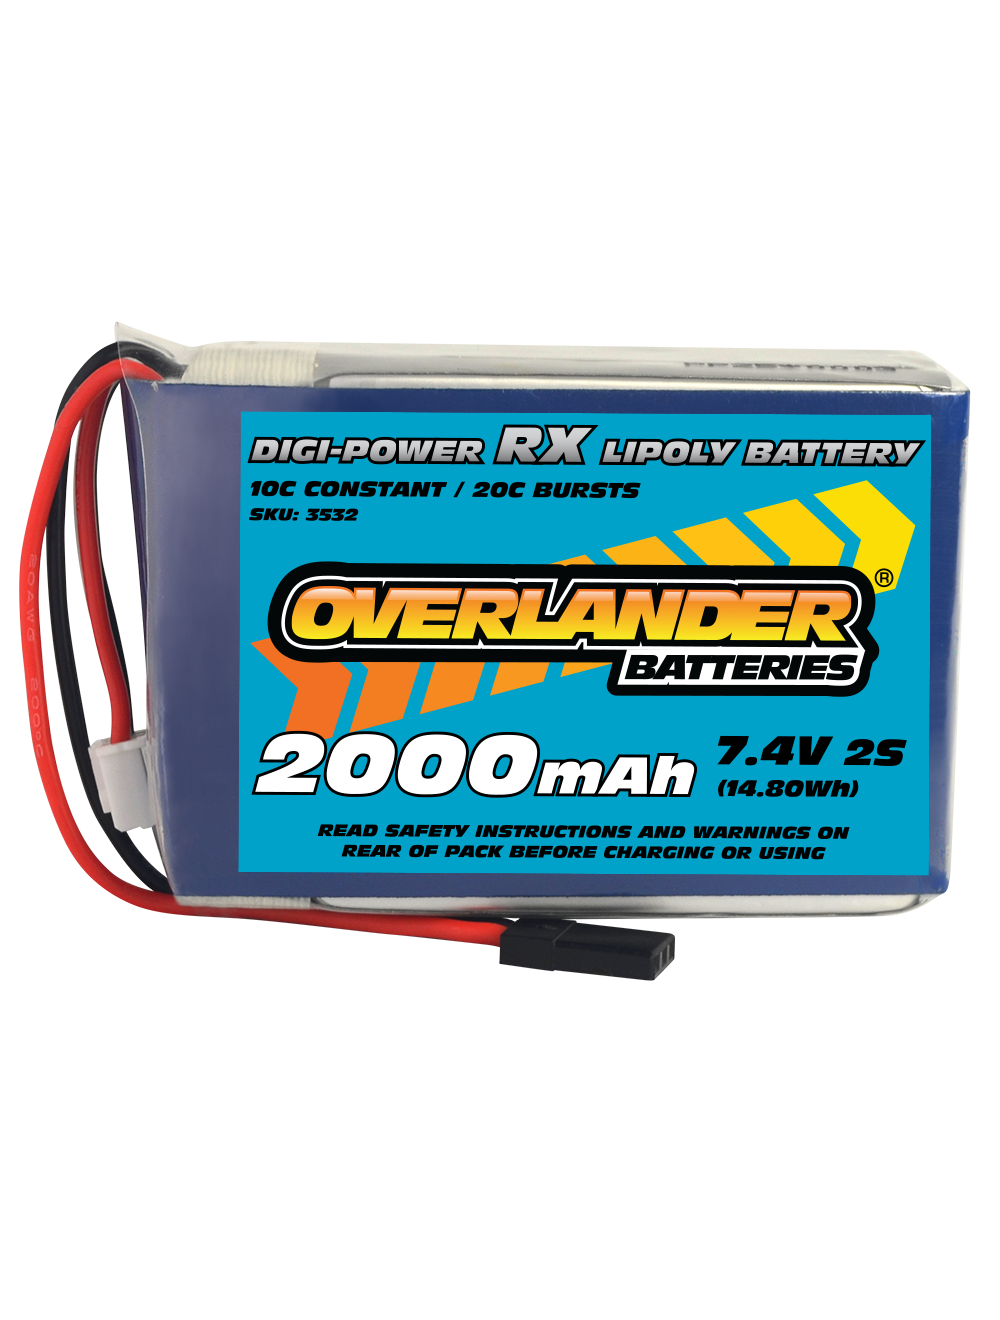 Overlander 2000mAh 7.4v 2S Digi-Power Receiver Pack LiPo Battery 3532